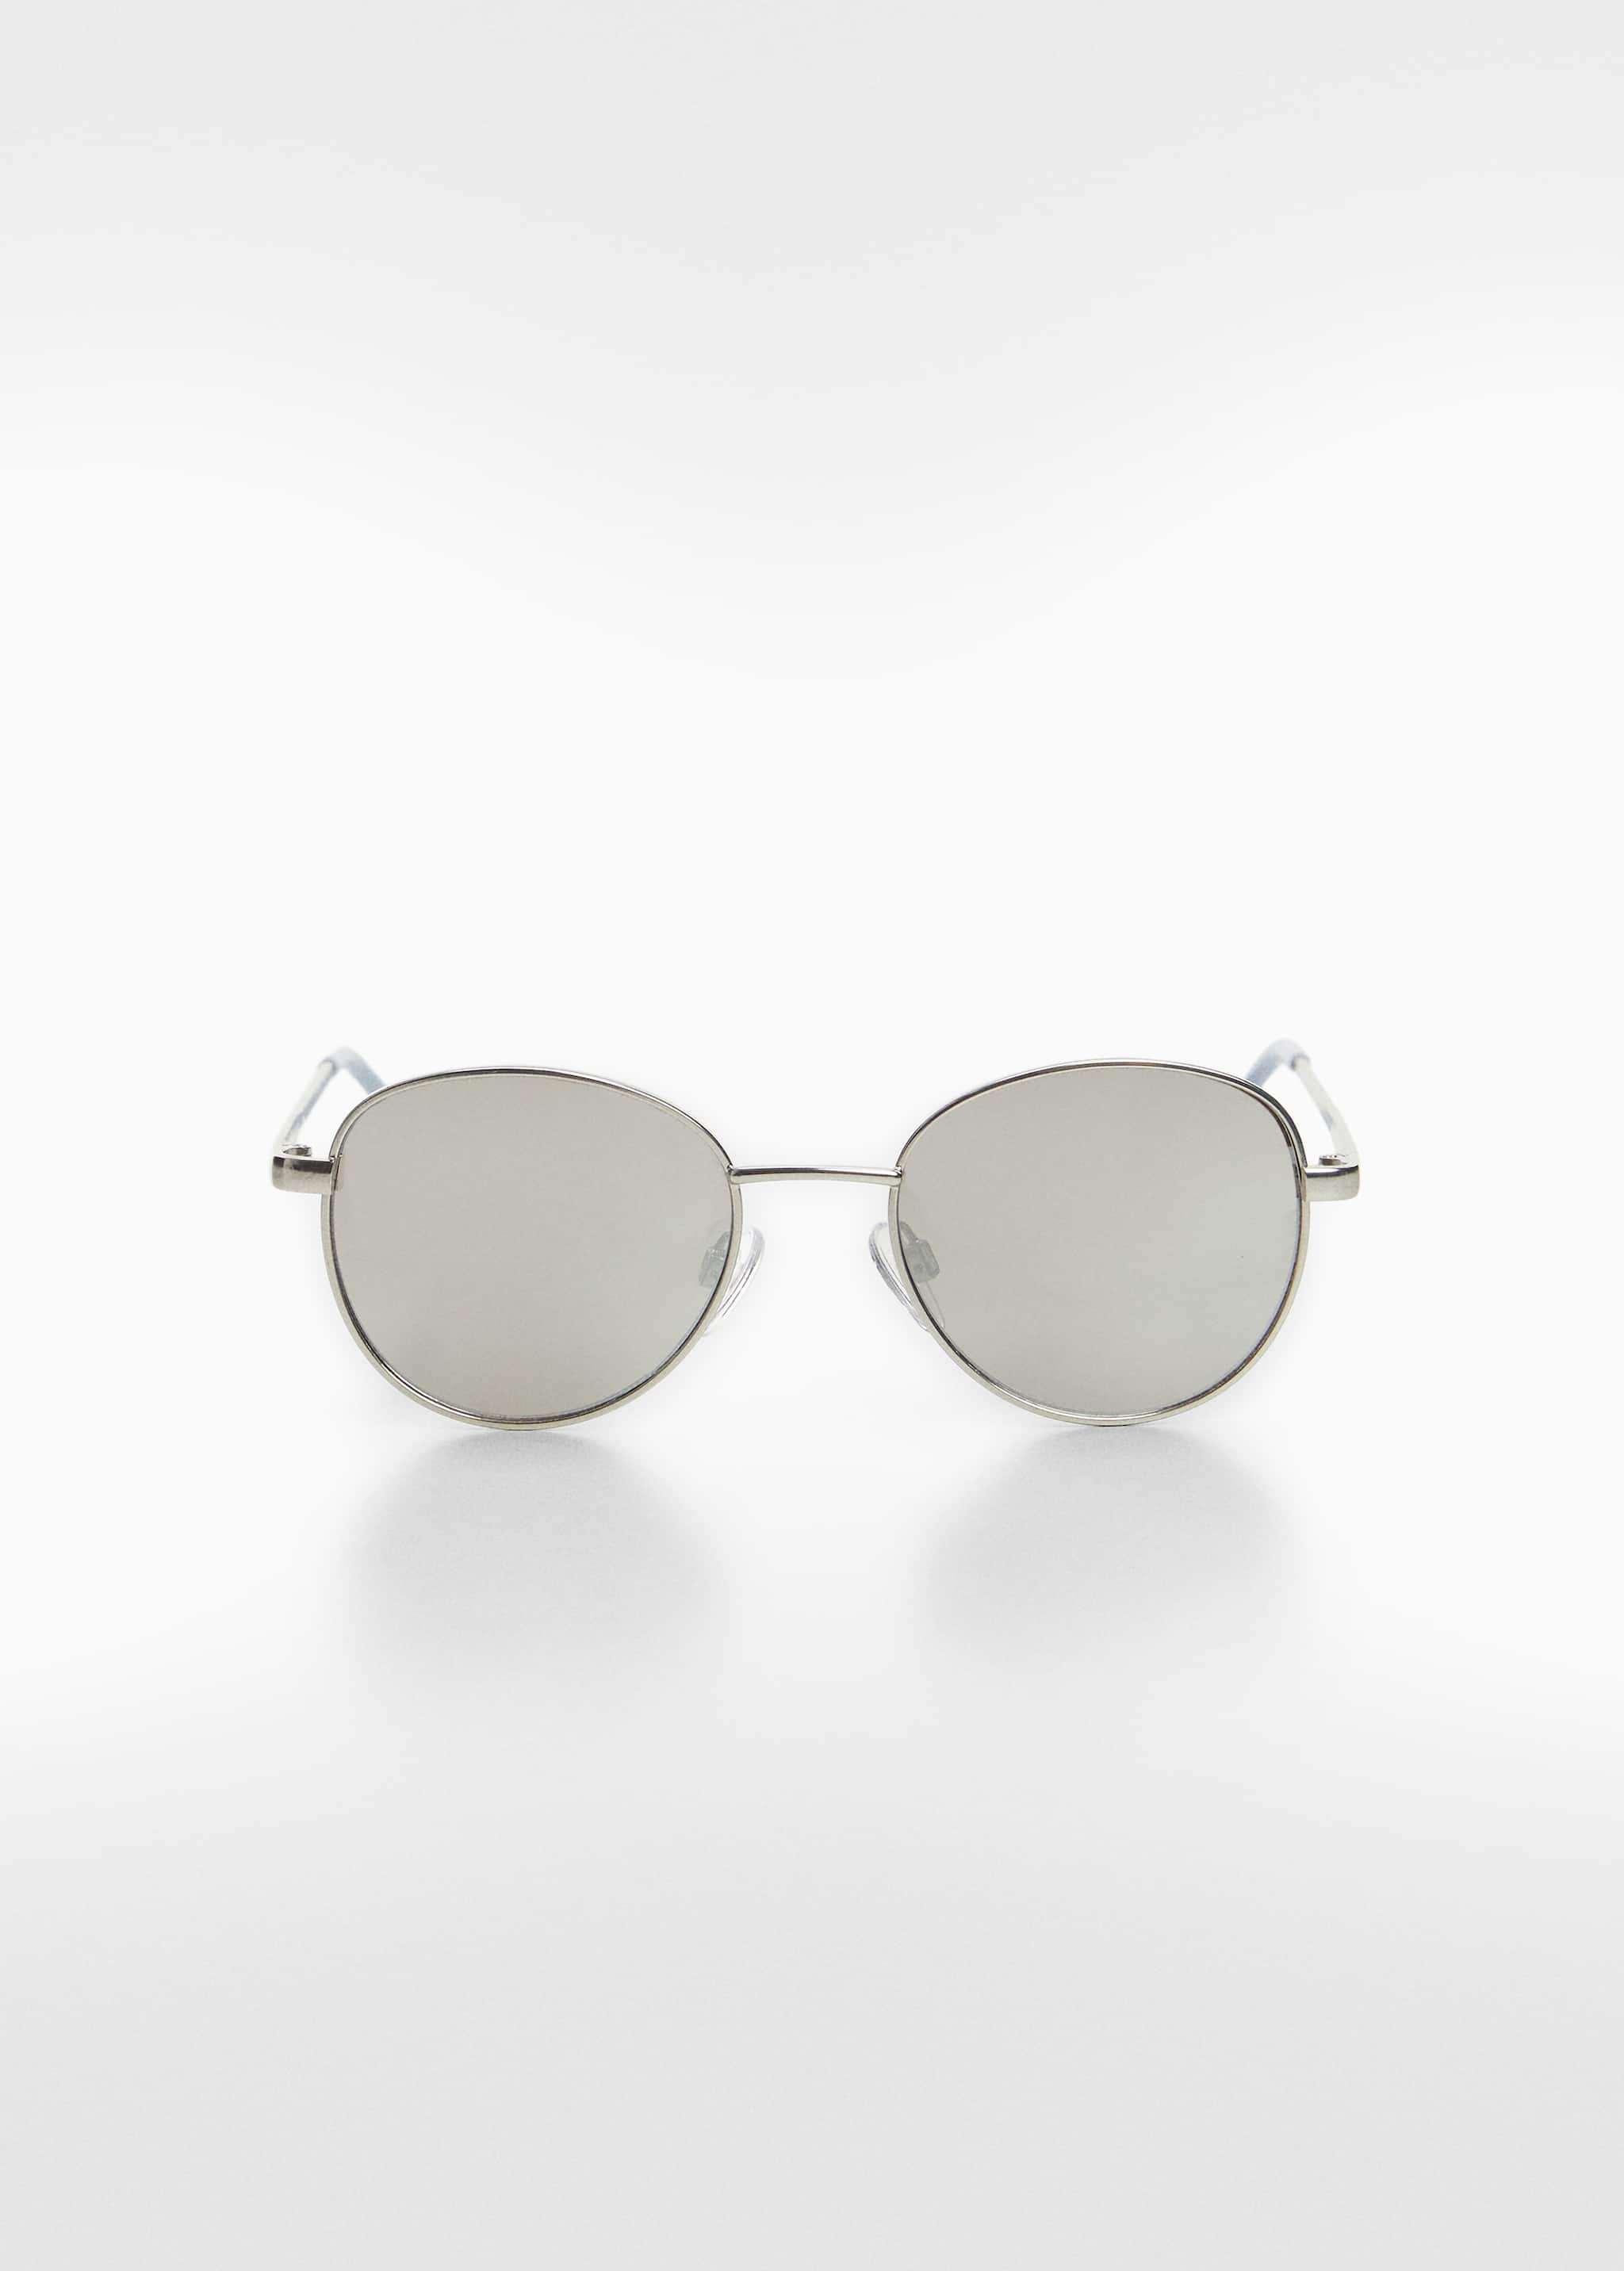 Солнцезащитные очки-авиаторы - Изделие без модели